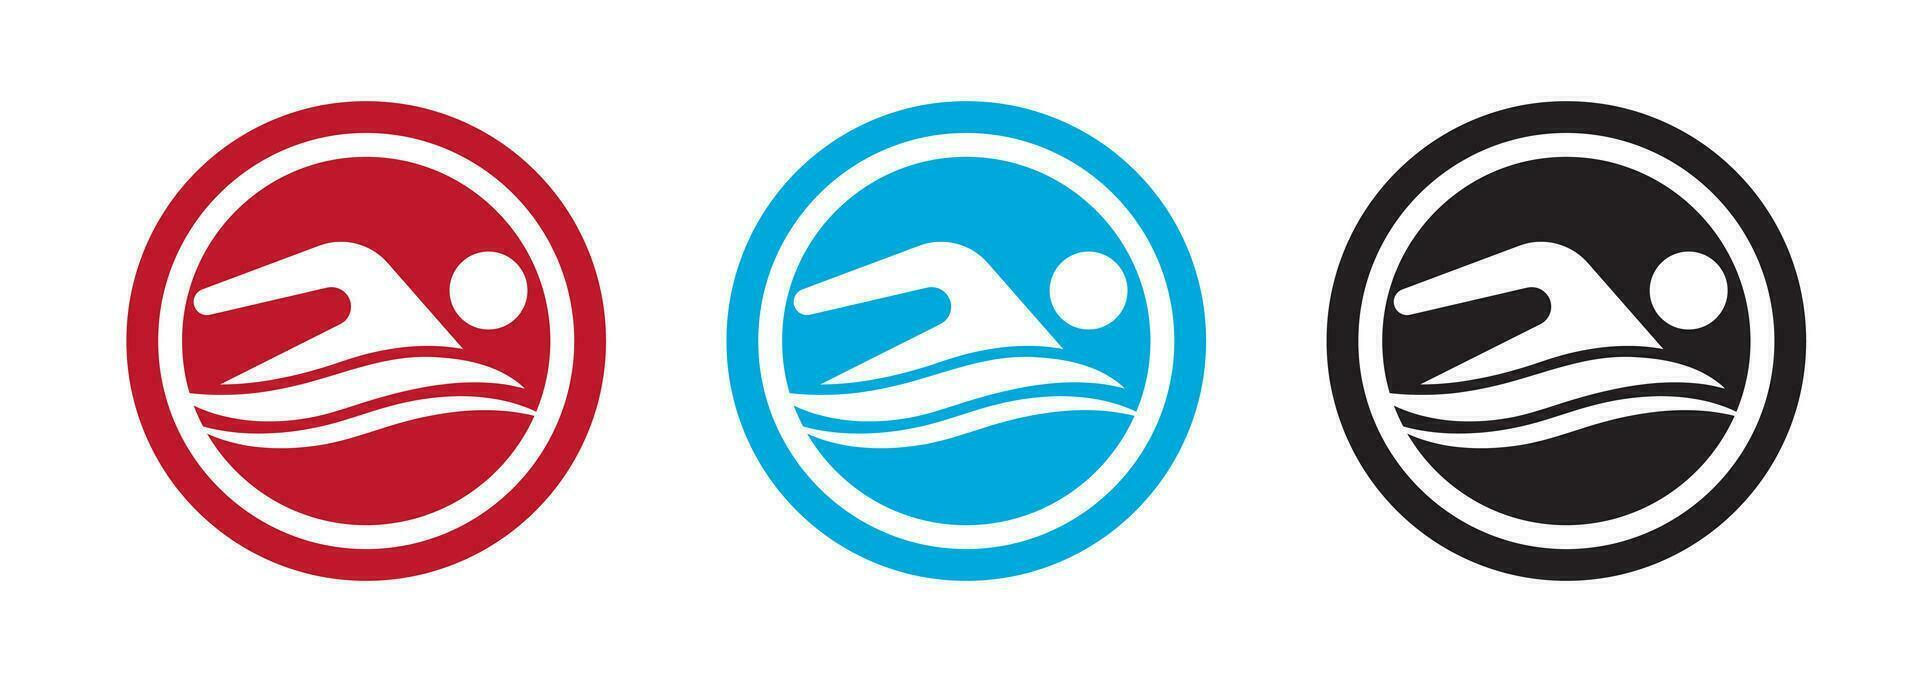 nager logo pour application ou site Internet. nager championnat icône. vecteur